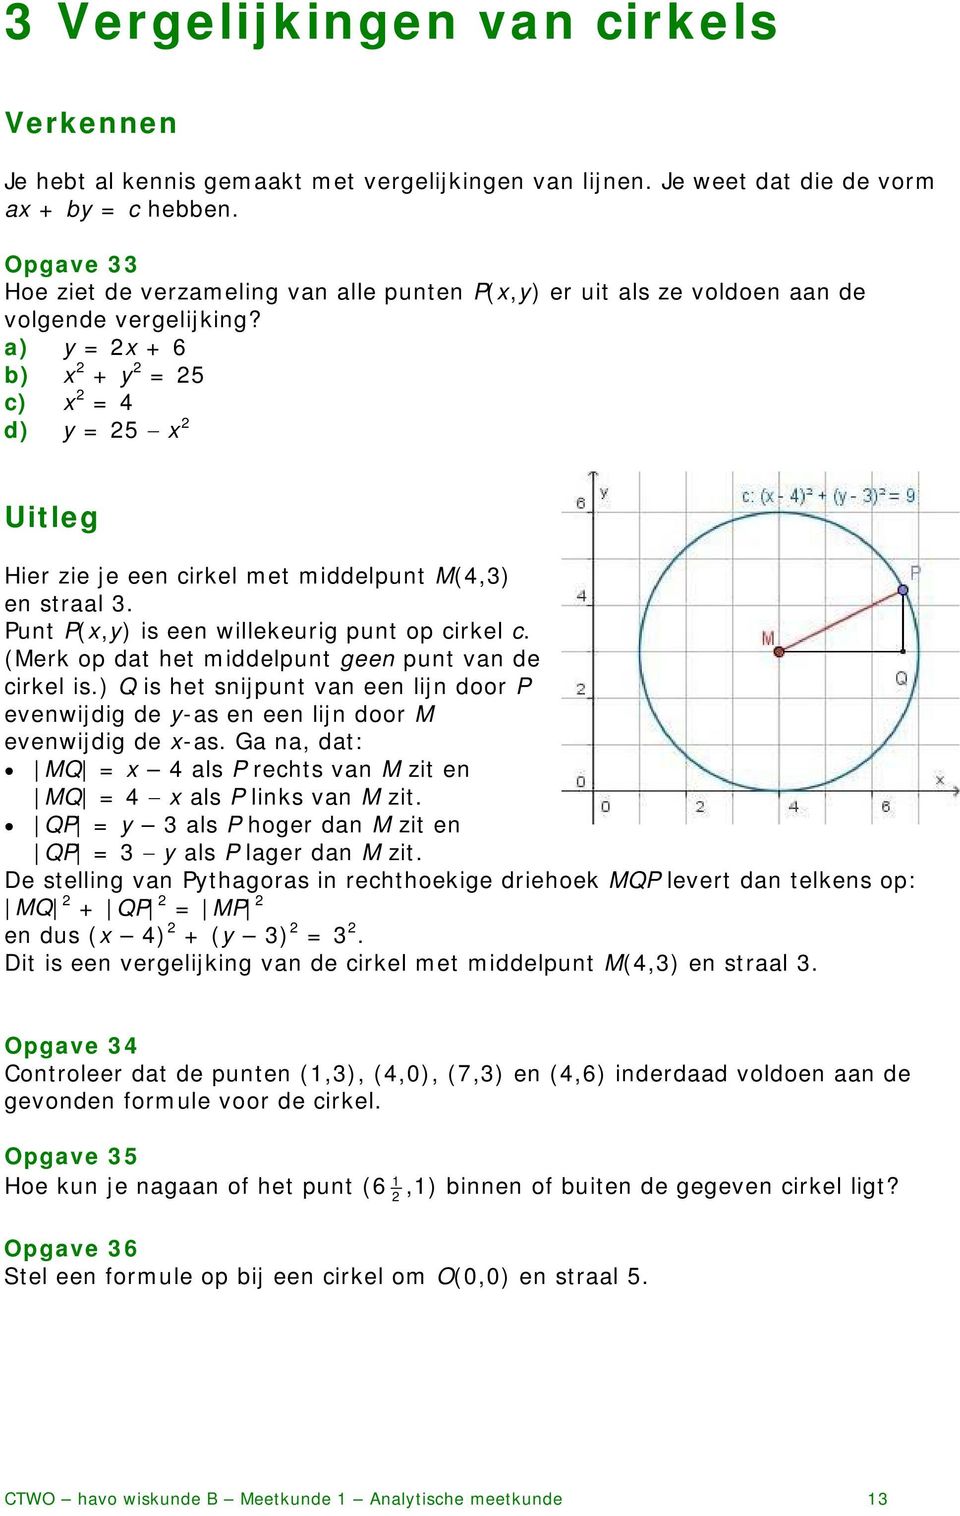 a) y = 2x + 6 b) x 2 + y 2 = 25 c) x 2 = 4 d) y = 25 x 2 Uitleg Hier zie je een cirkel met middelpunt M(4,3) en straal 3. Punt P(x,y) is een willekeurig punt op cirkel c.